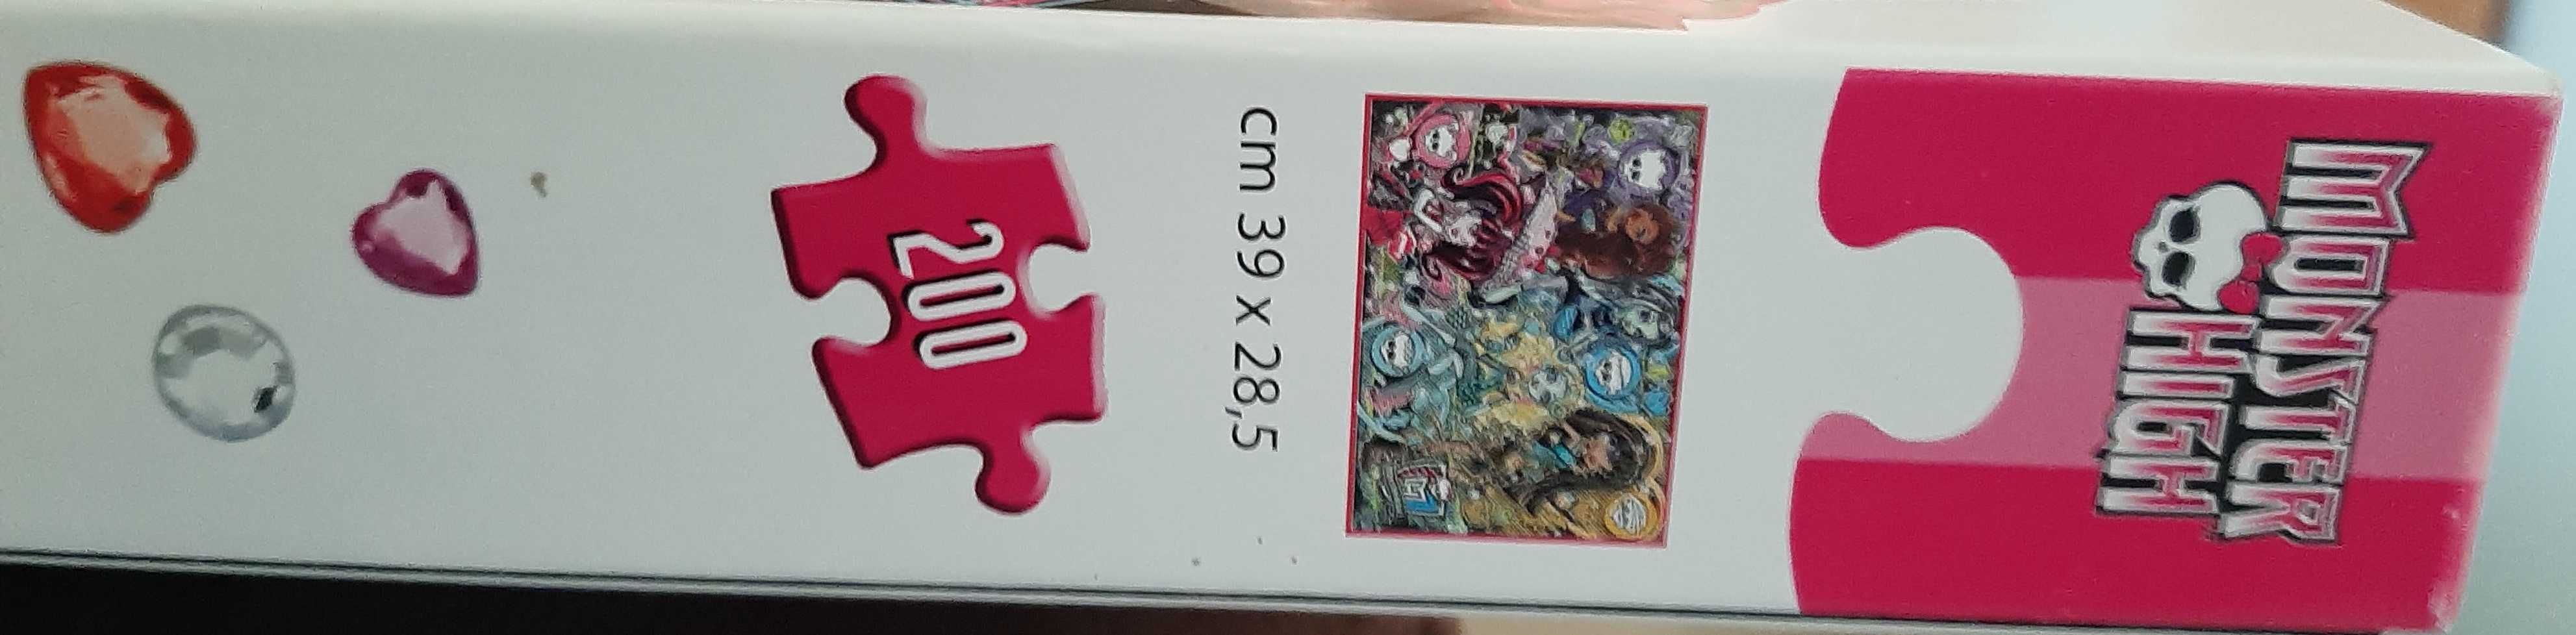 puzzle Clementoni Monster High 200 elementów